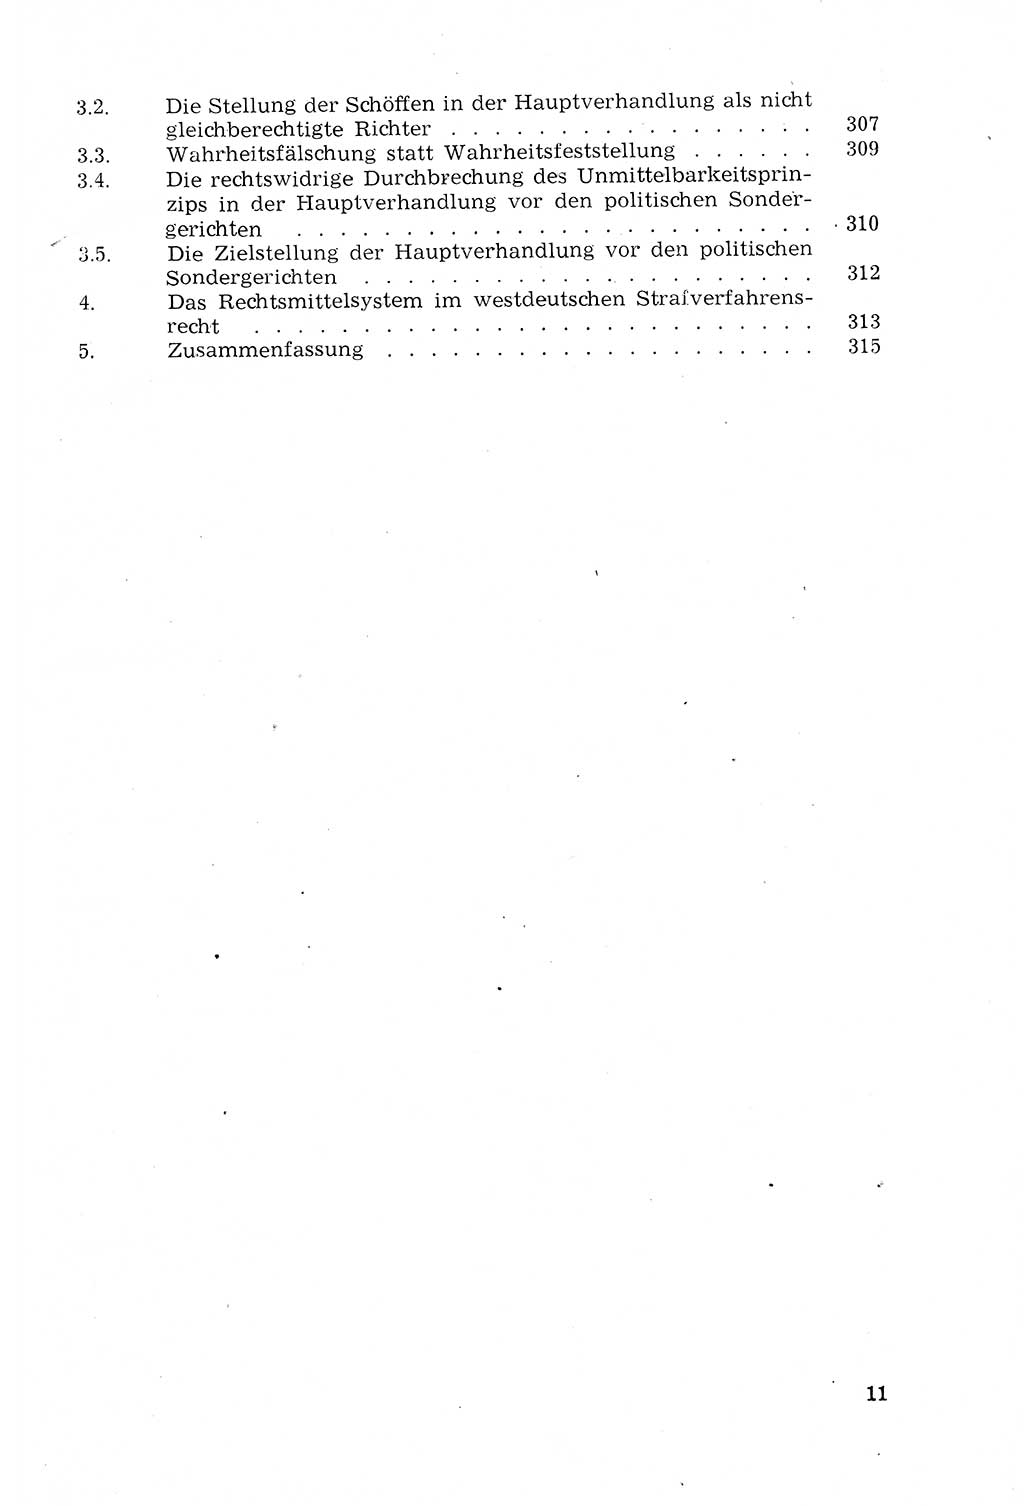 Strafprozeßrecht der DDR (Deutsche Demokratische Republik), Lehrmaterial 1969, Seite 11 (Strafprozeßr. DDR Lehrmat. 1969, S. 11)